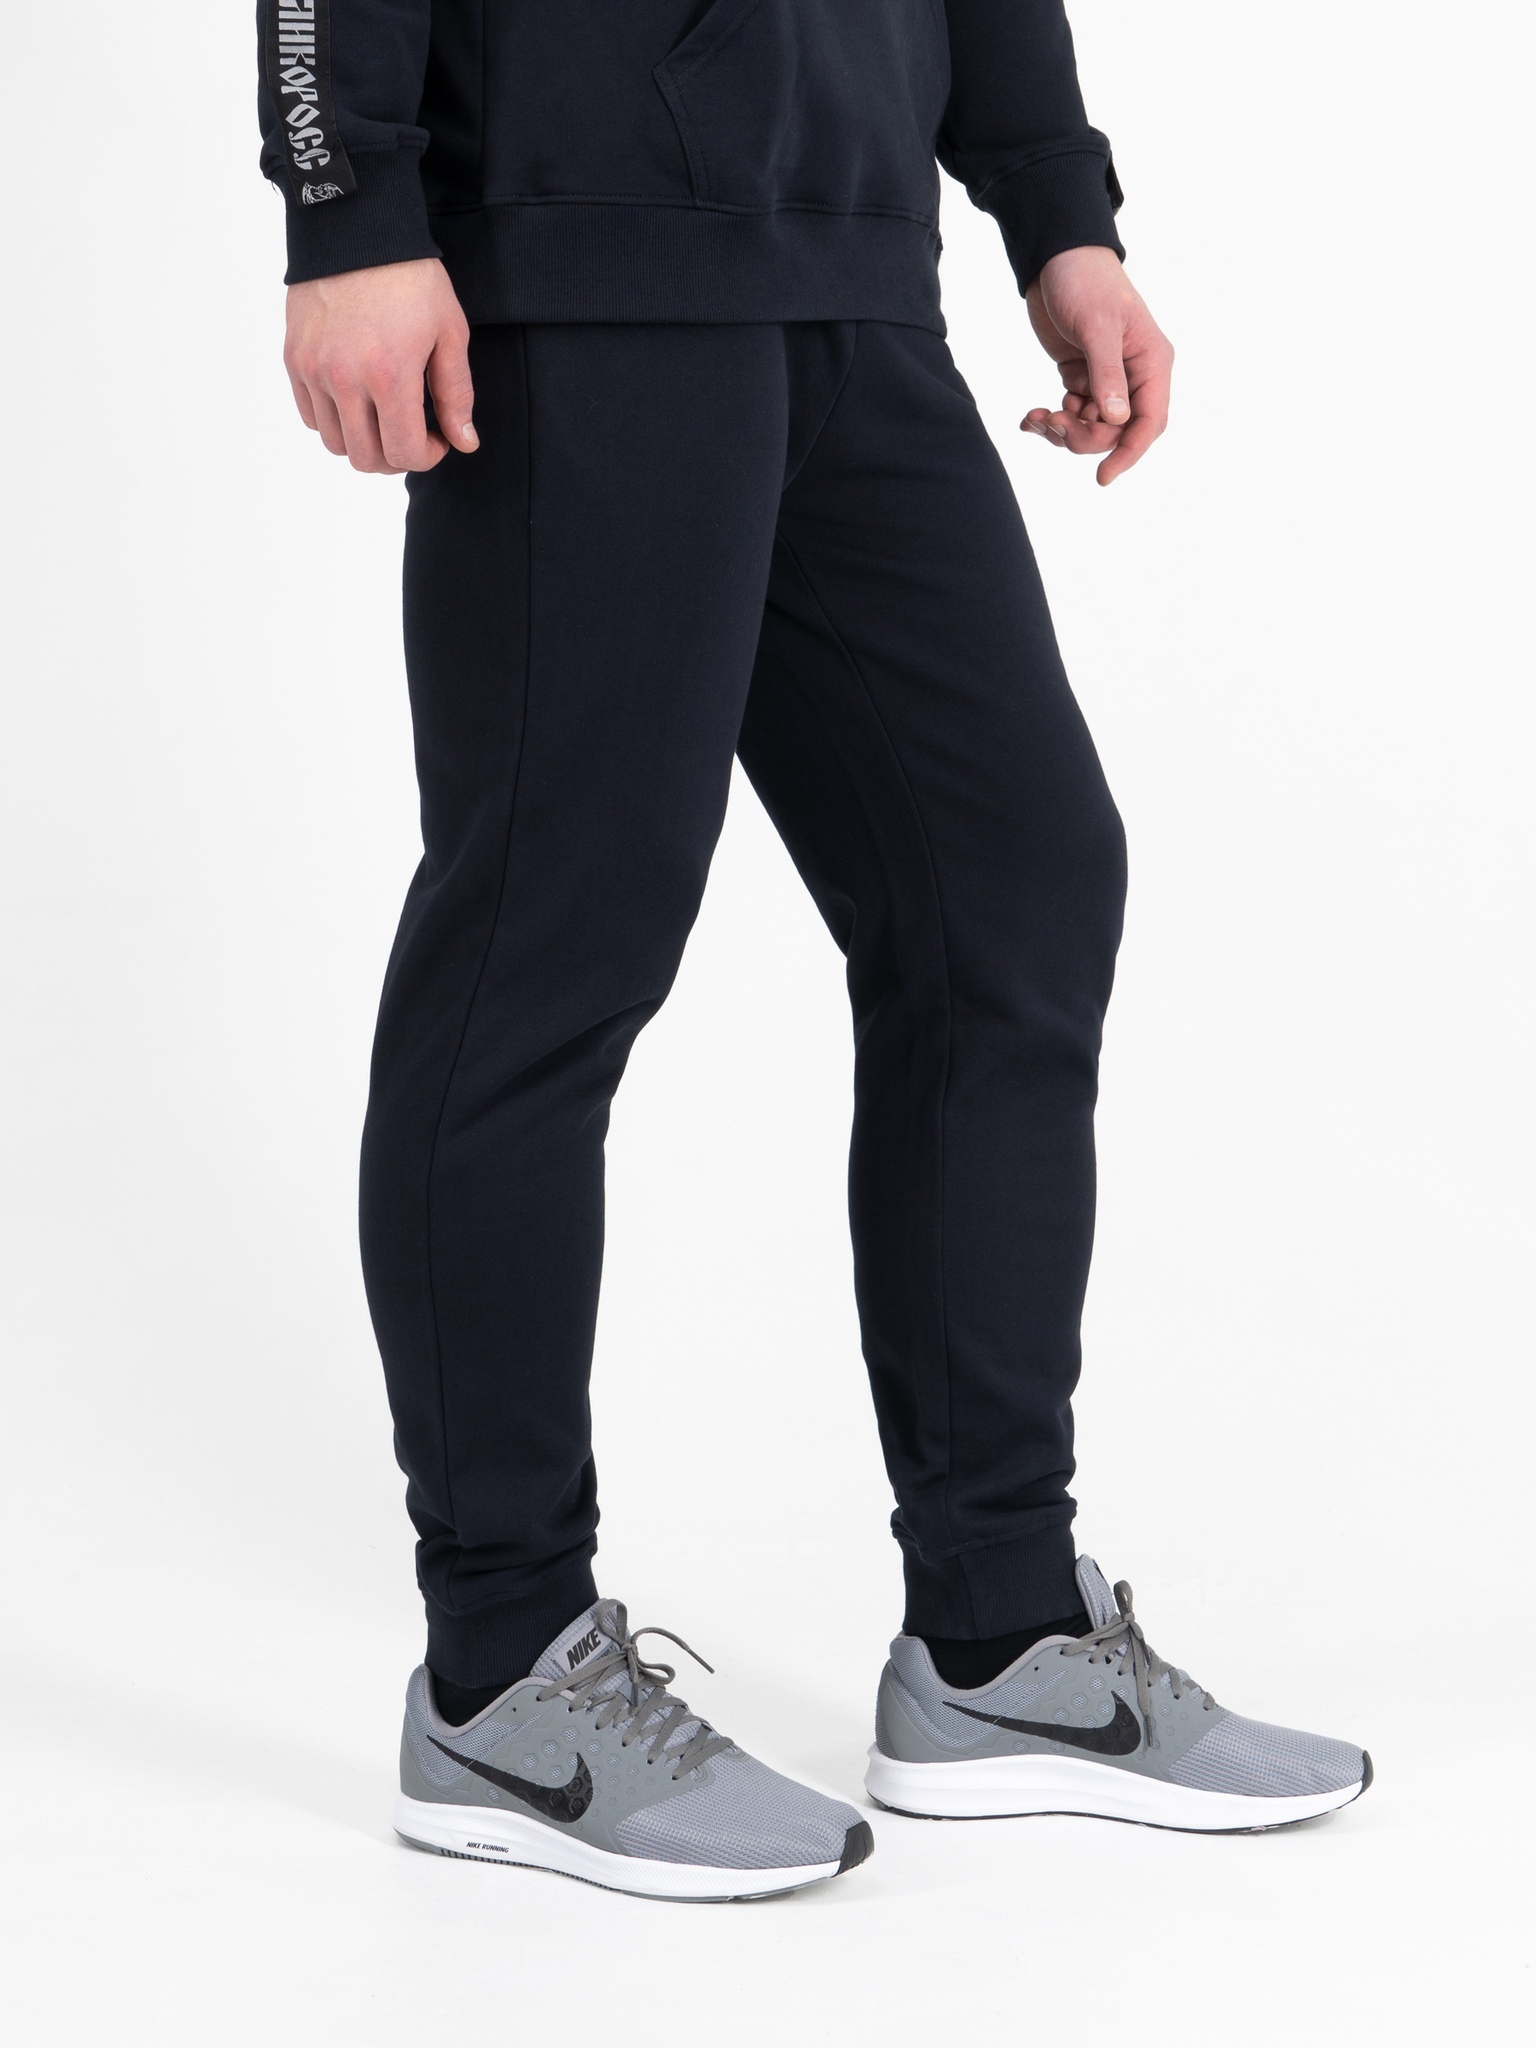 фото Спортивные брюки мужские великоросс bm синие 60 ru